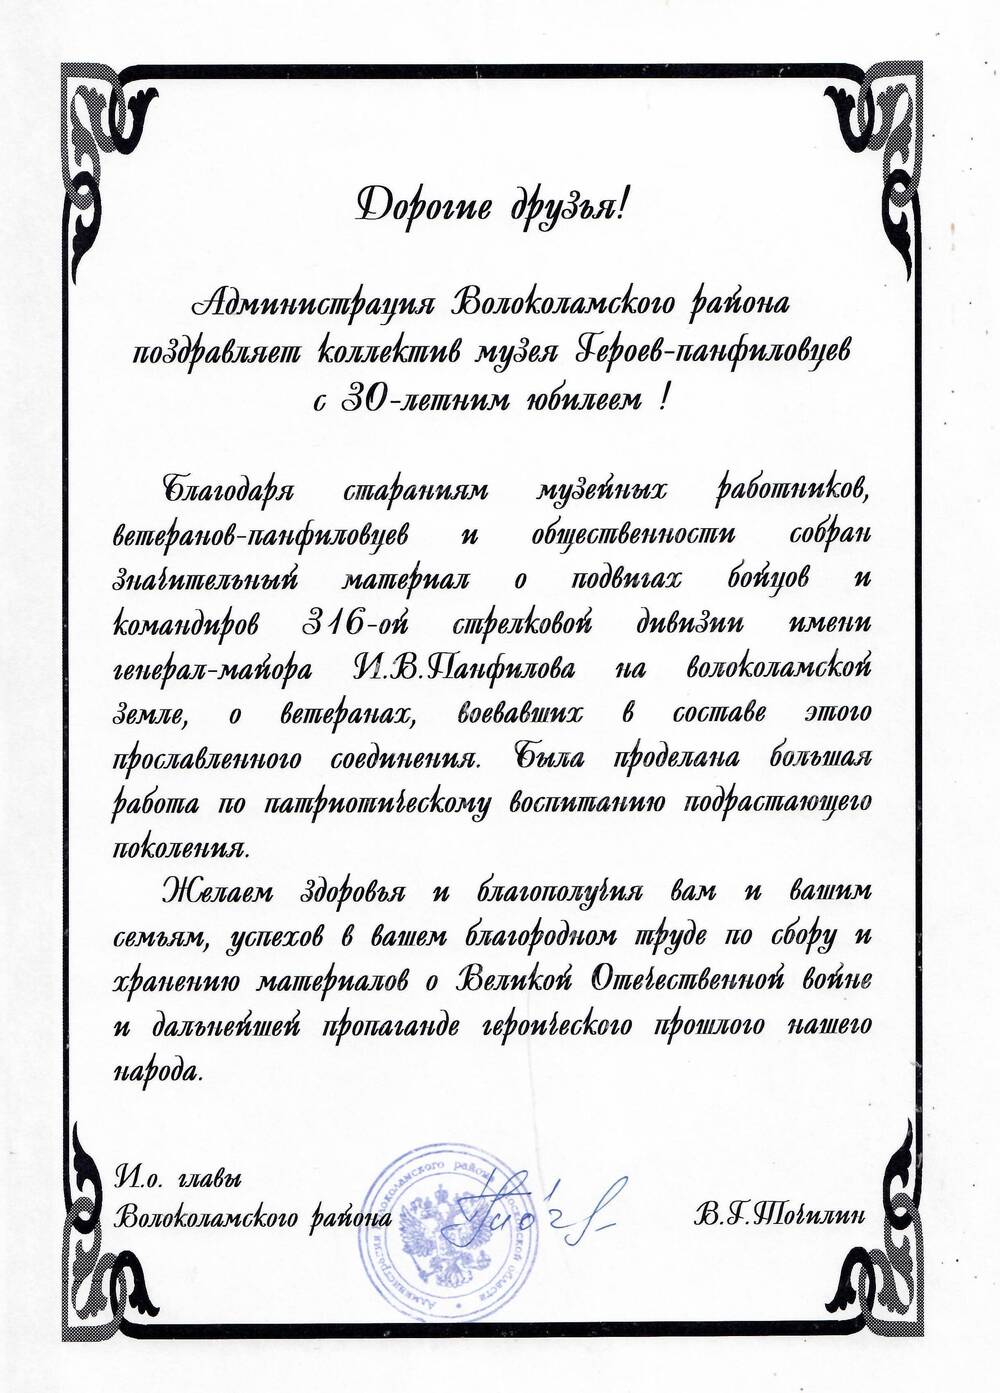 Поздравление от Администрации Волоколамского района коллективу музея Героев-панфиловцев с 30-летним юбилеем.